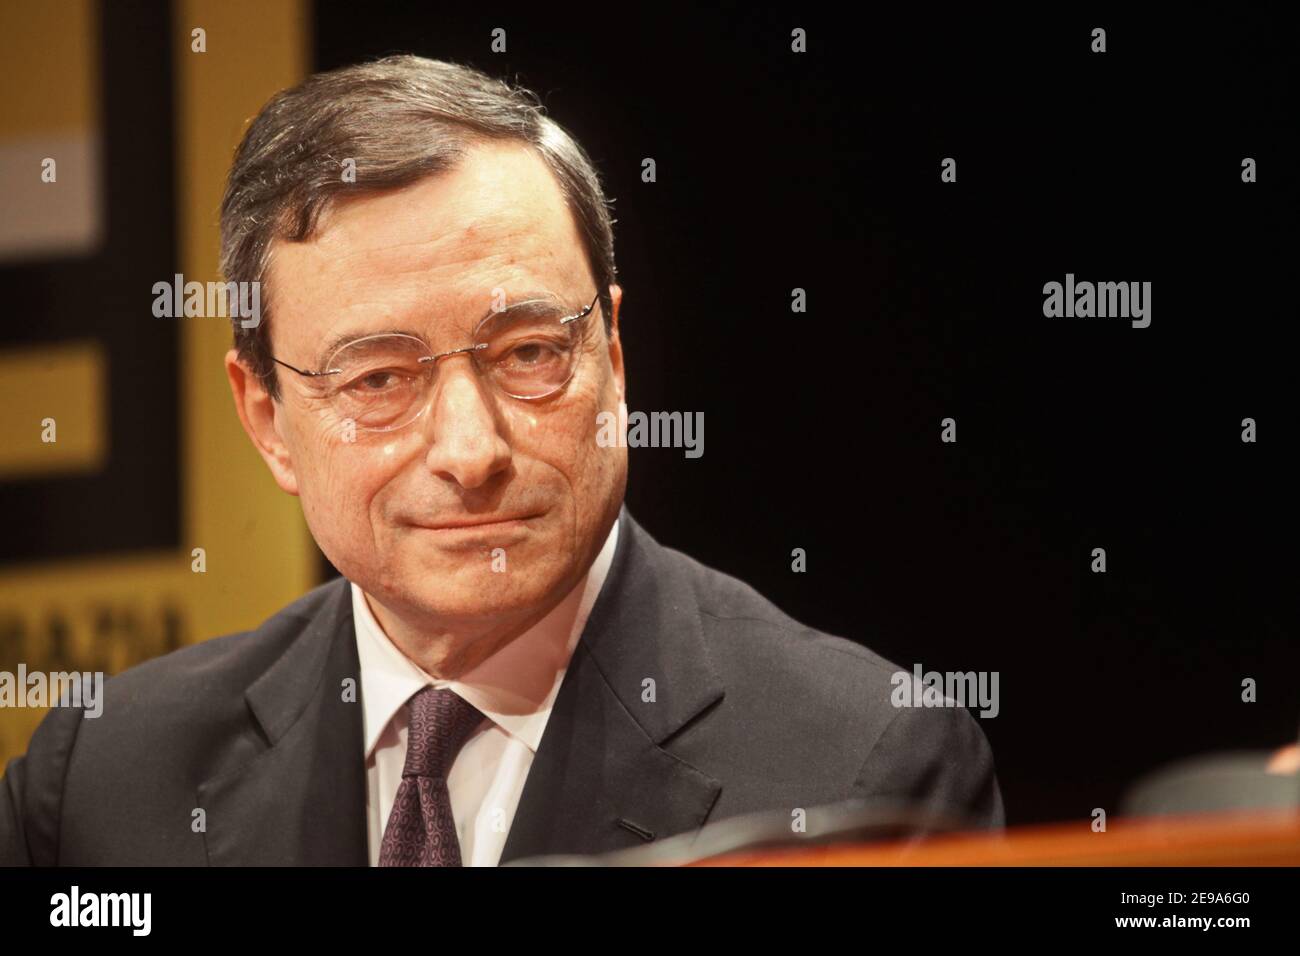 Mario Draghi, président de la Banque centrale européenne , prend la parole lors d'une conférence de presse. Rome, Italie - avril 2018 Banque D'Images